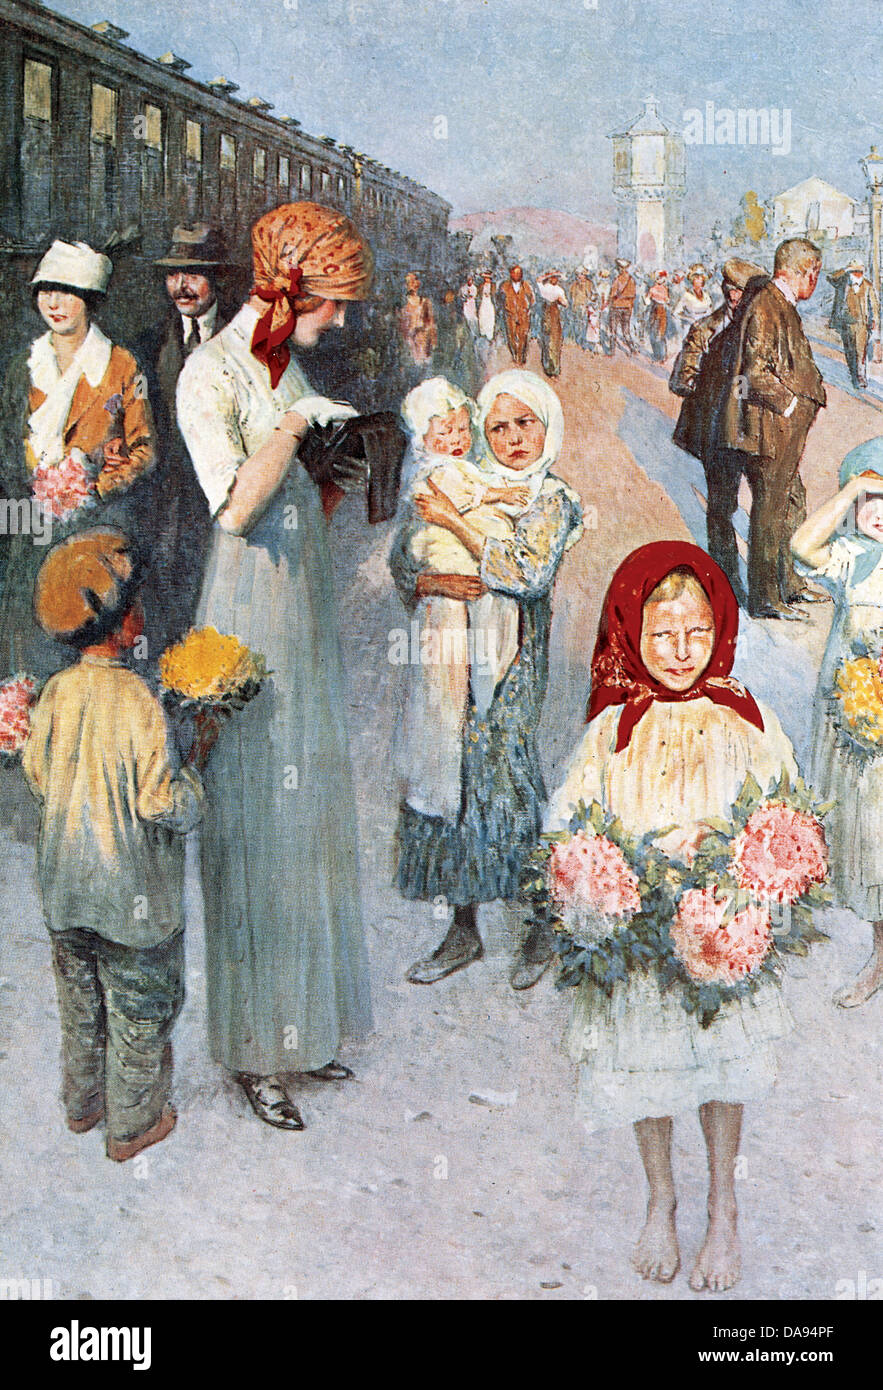 La Russia. Trans-Siberian. Stazione in Siberia, con i bambini che vendono fiori. 1913. Incisione colorata. Foto Stock